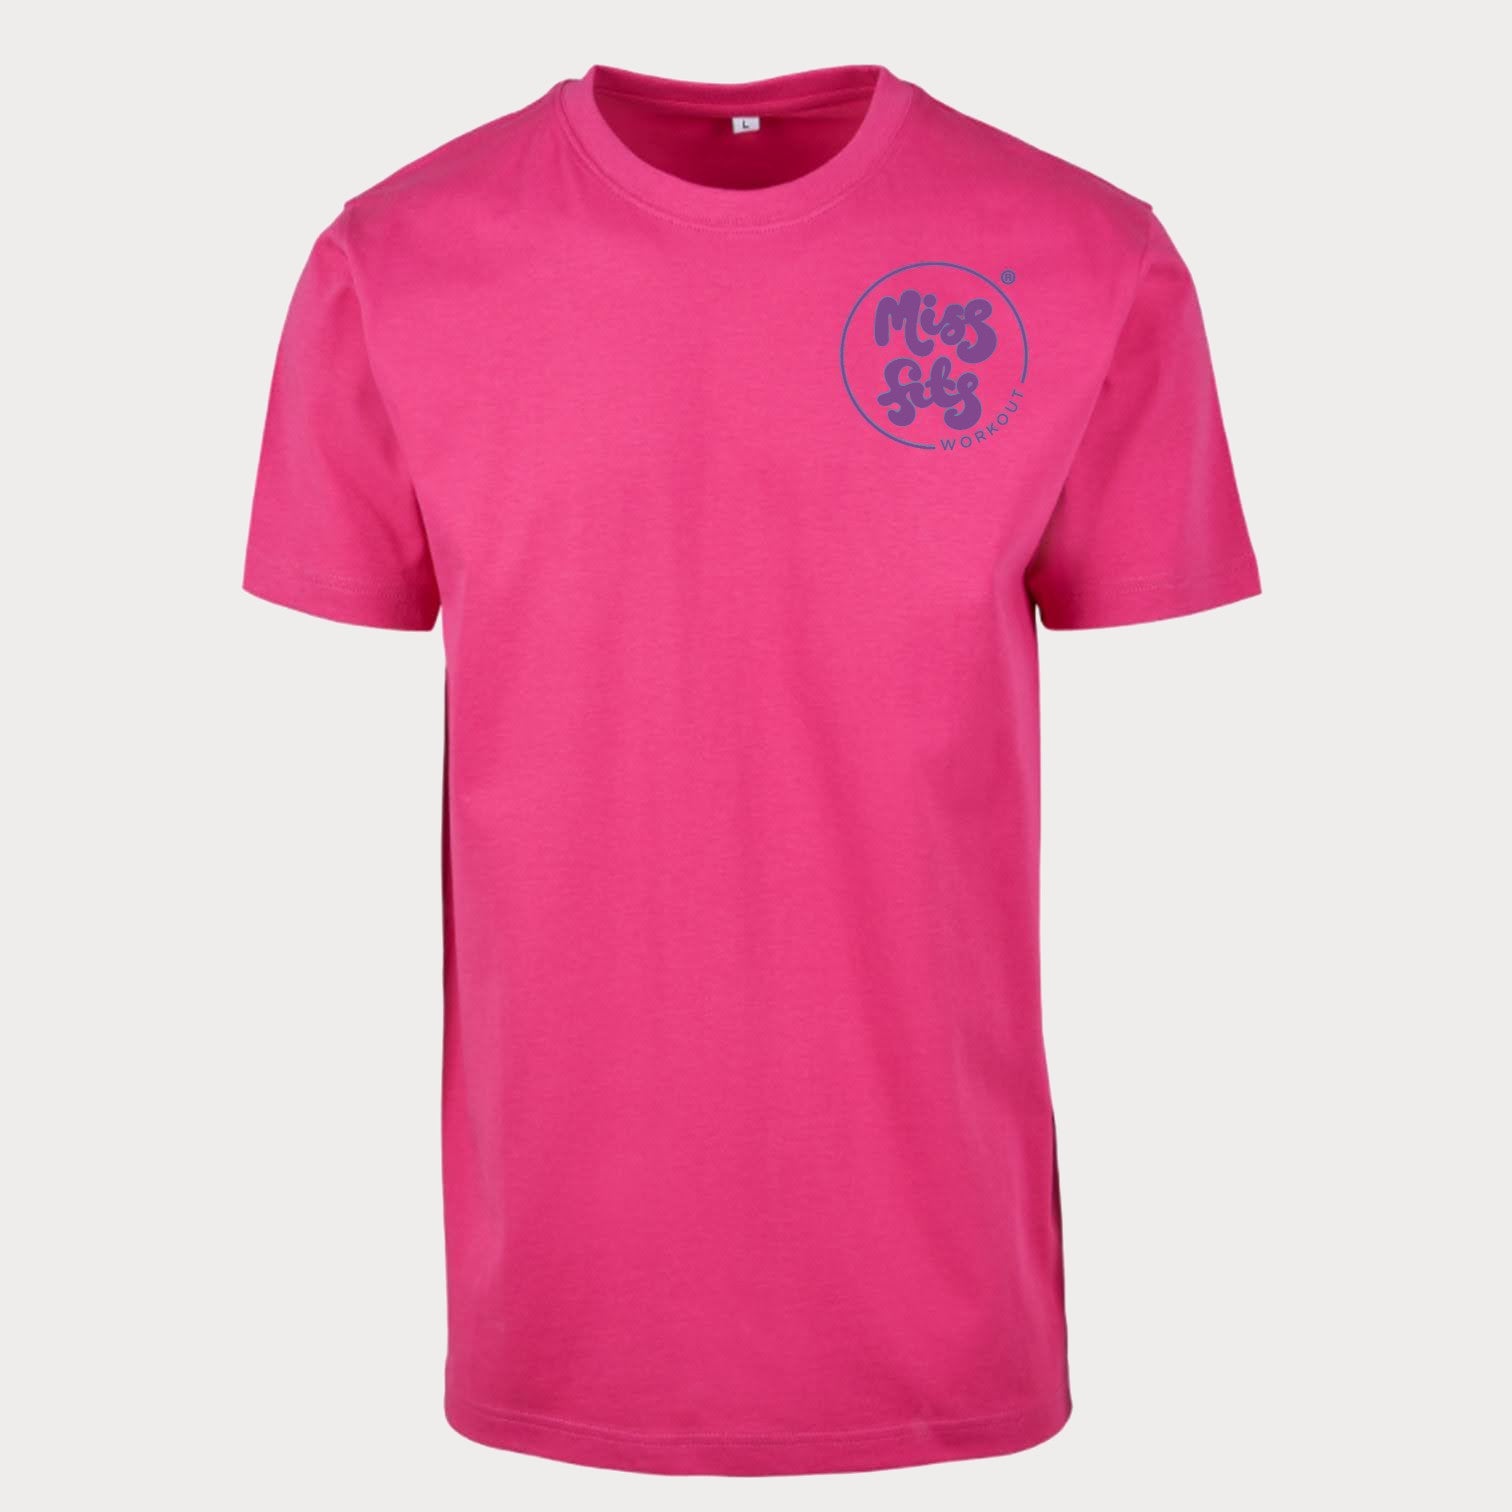 MissFits Workout Pink Boxy T Shirt